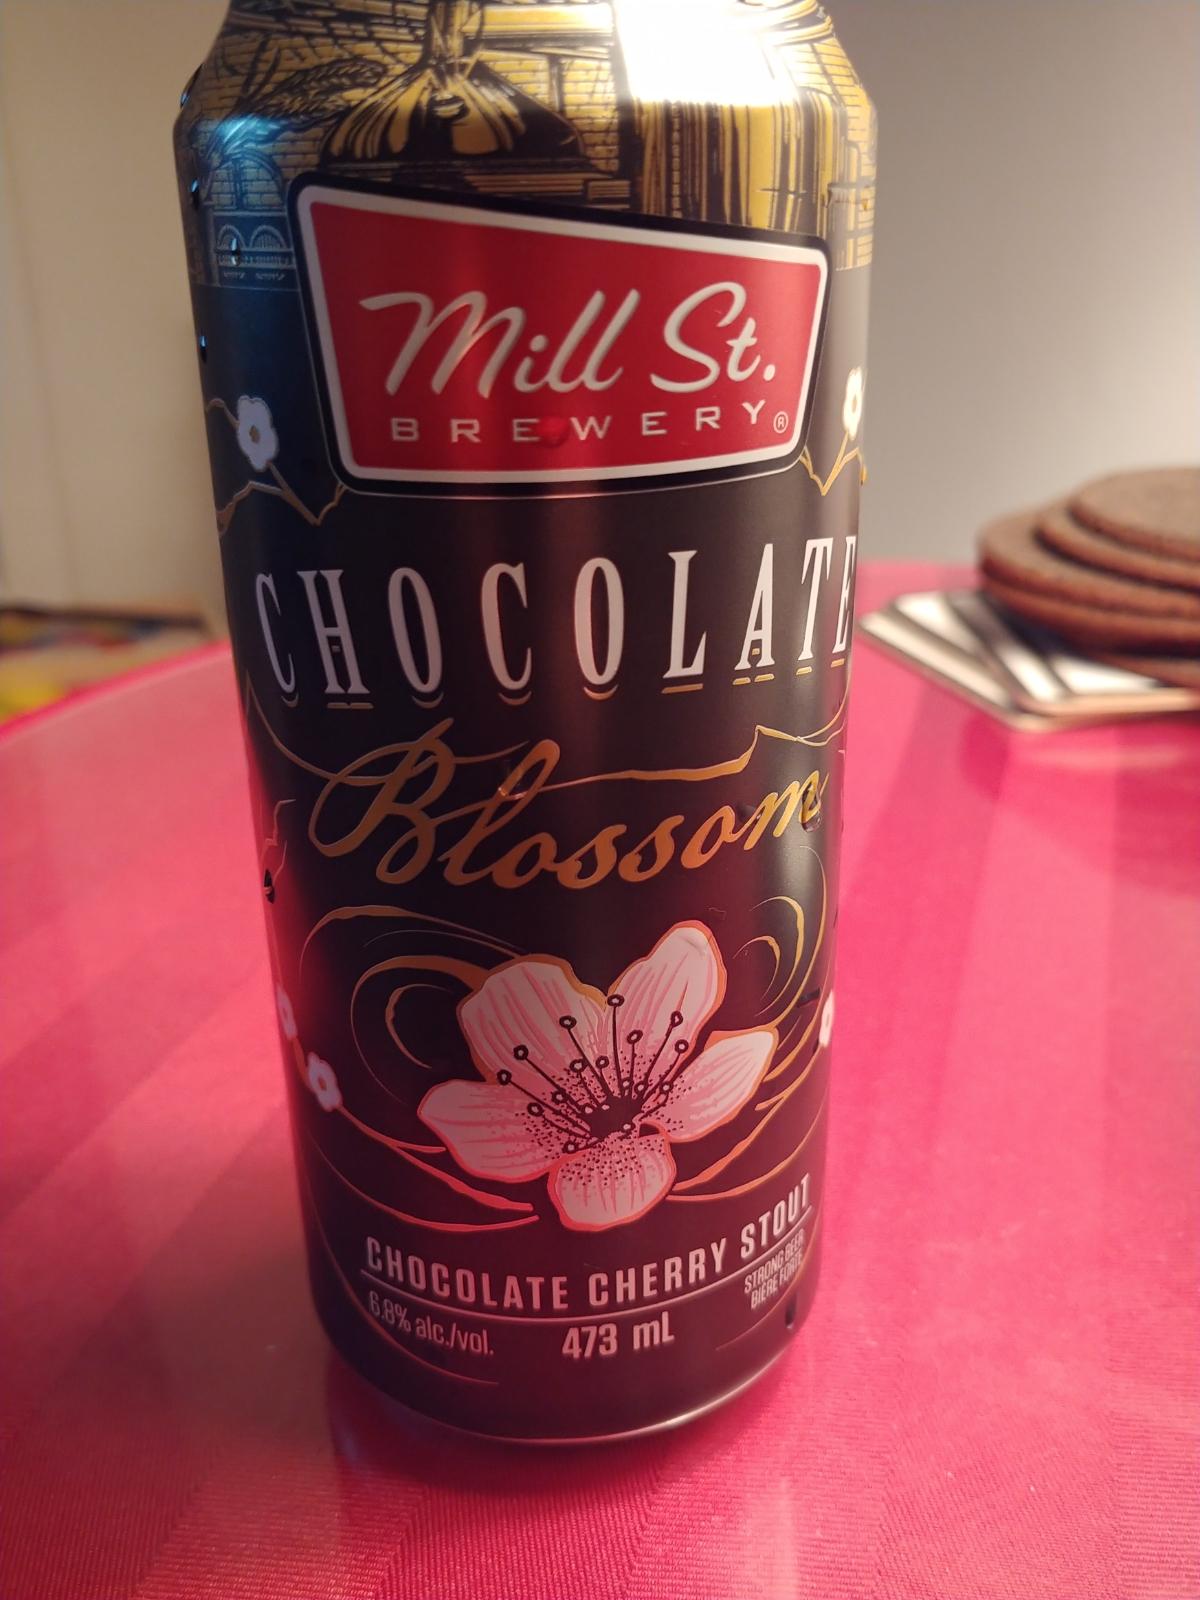 Chocolate Blossom